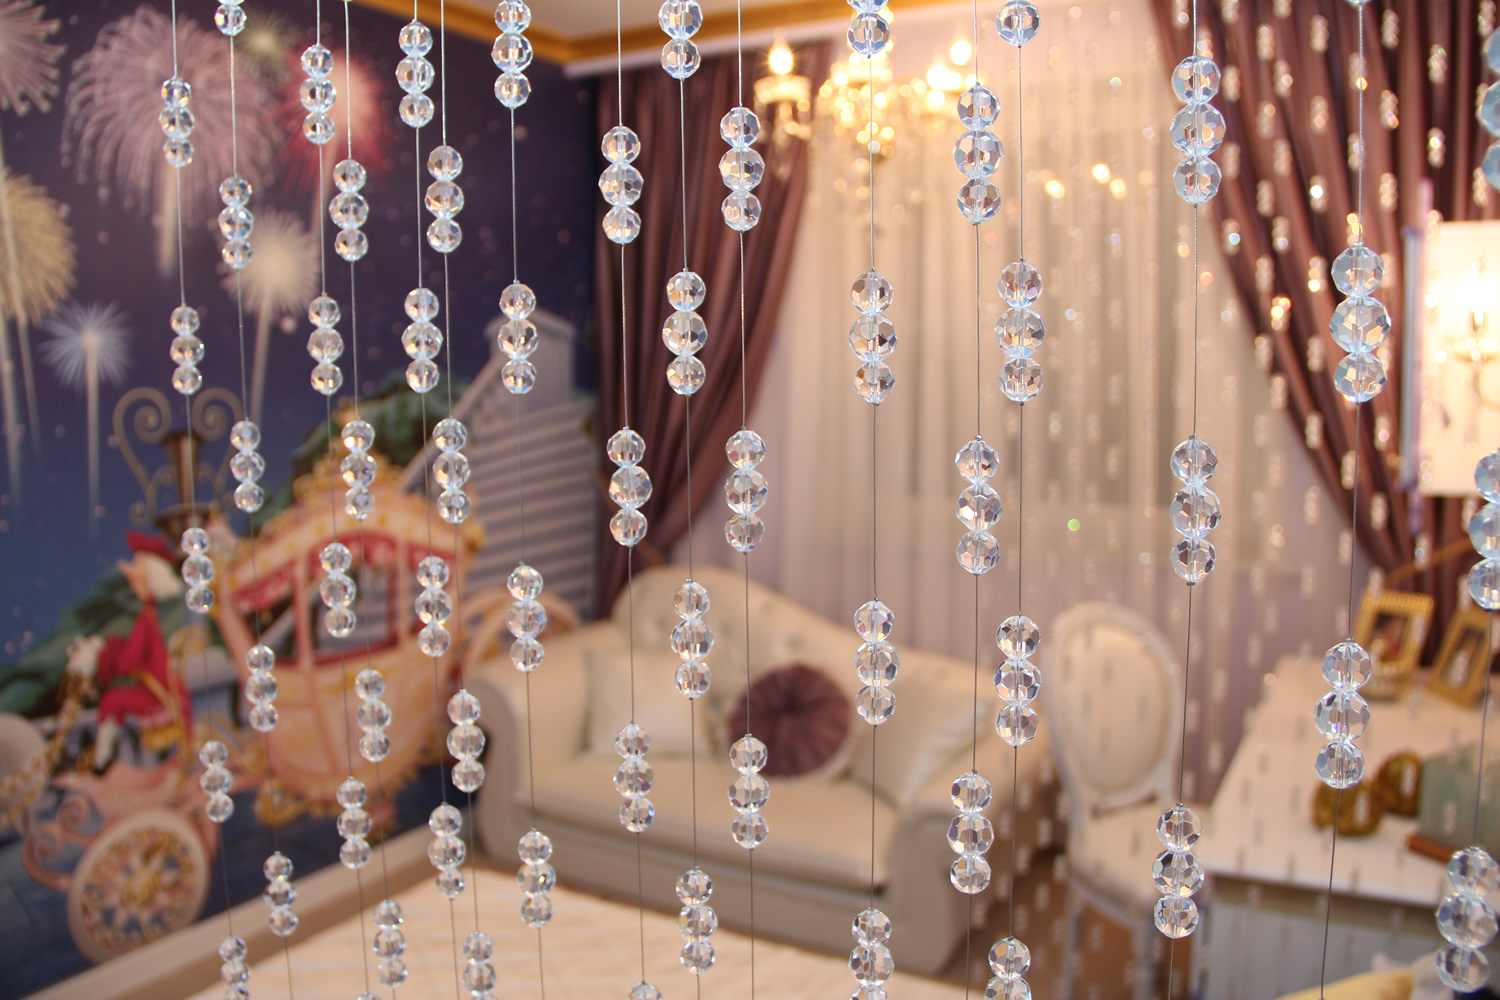 interior bead curtains